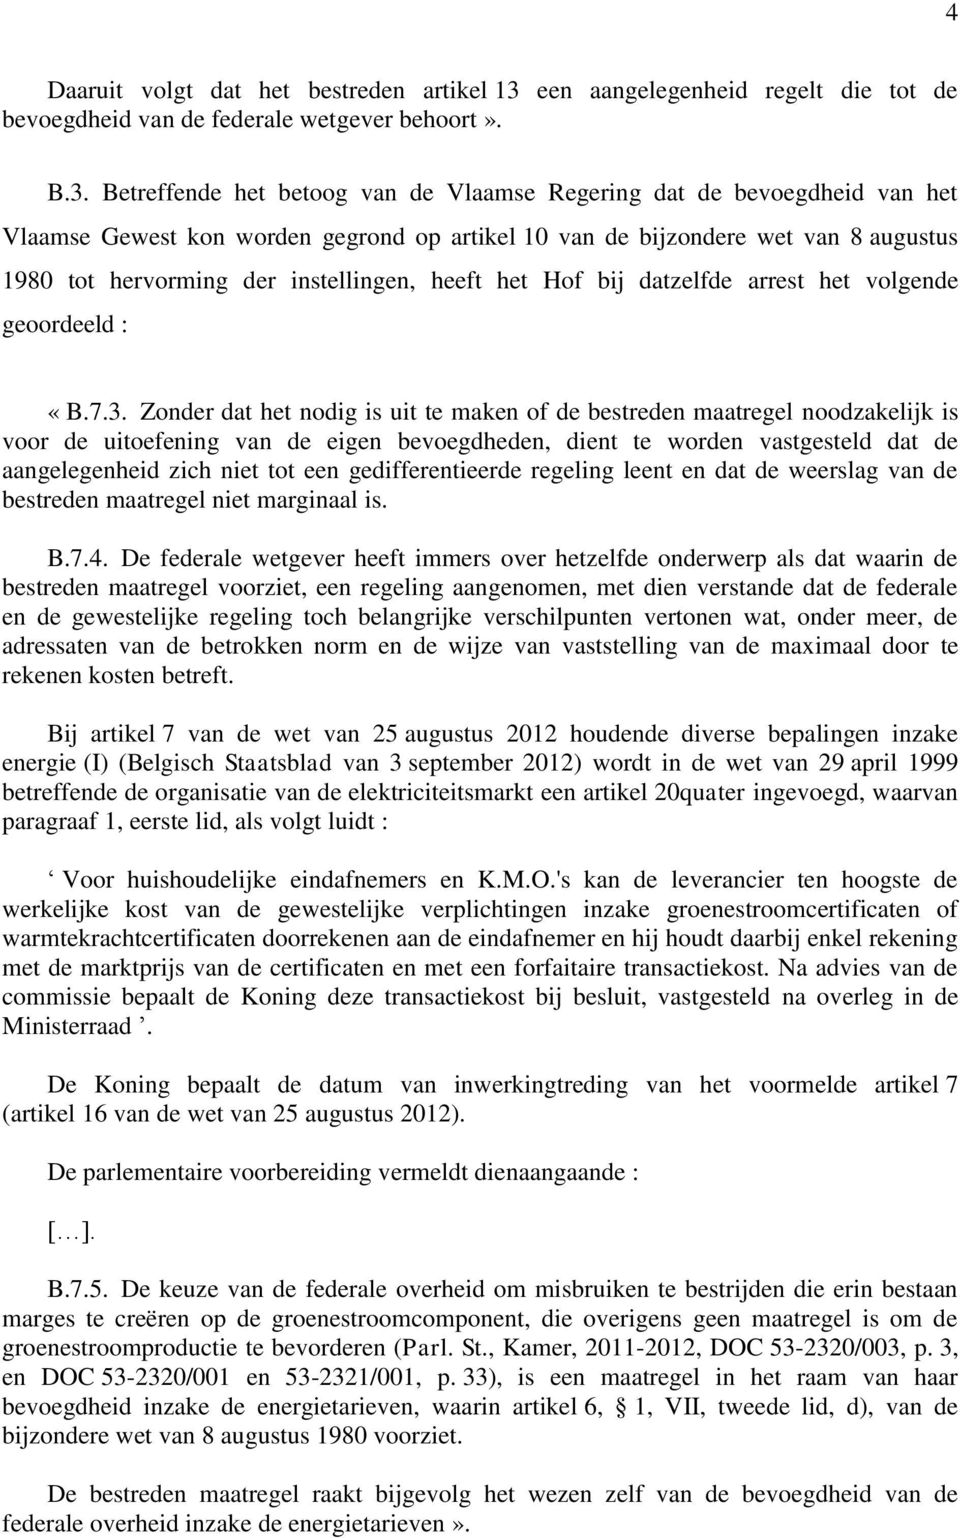 Betreffende het betoog van de Vlaamse Regering dat de bevoegdheid van het Vlaamse Gewest kon worden gegrond op artikel 10 van de bijzondere wet van 8 augustus 1980 tot hervorming der instellingen,